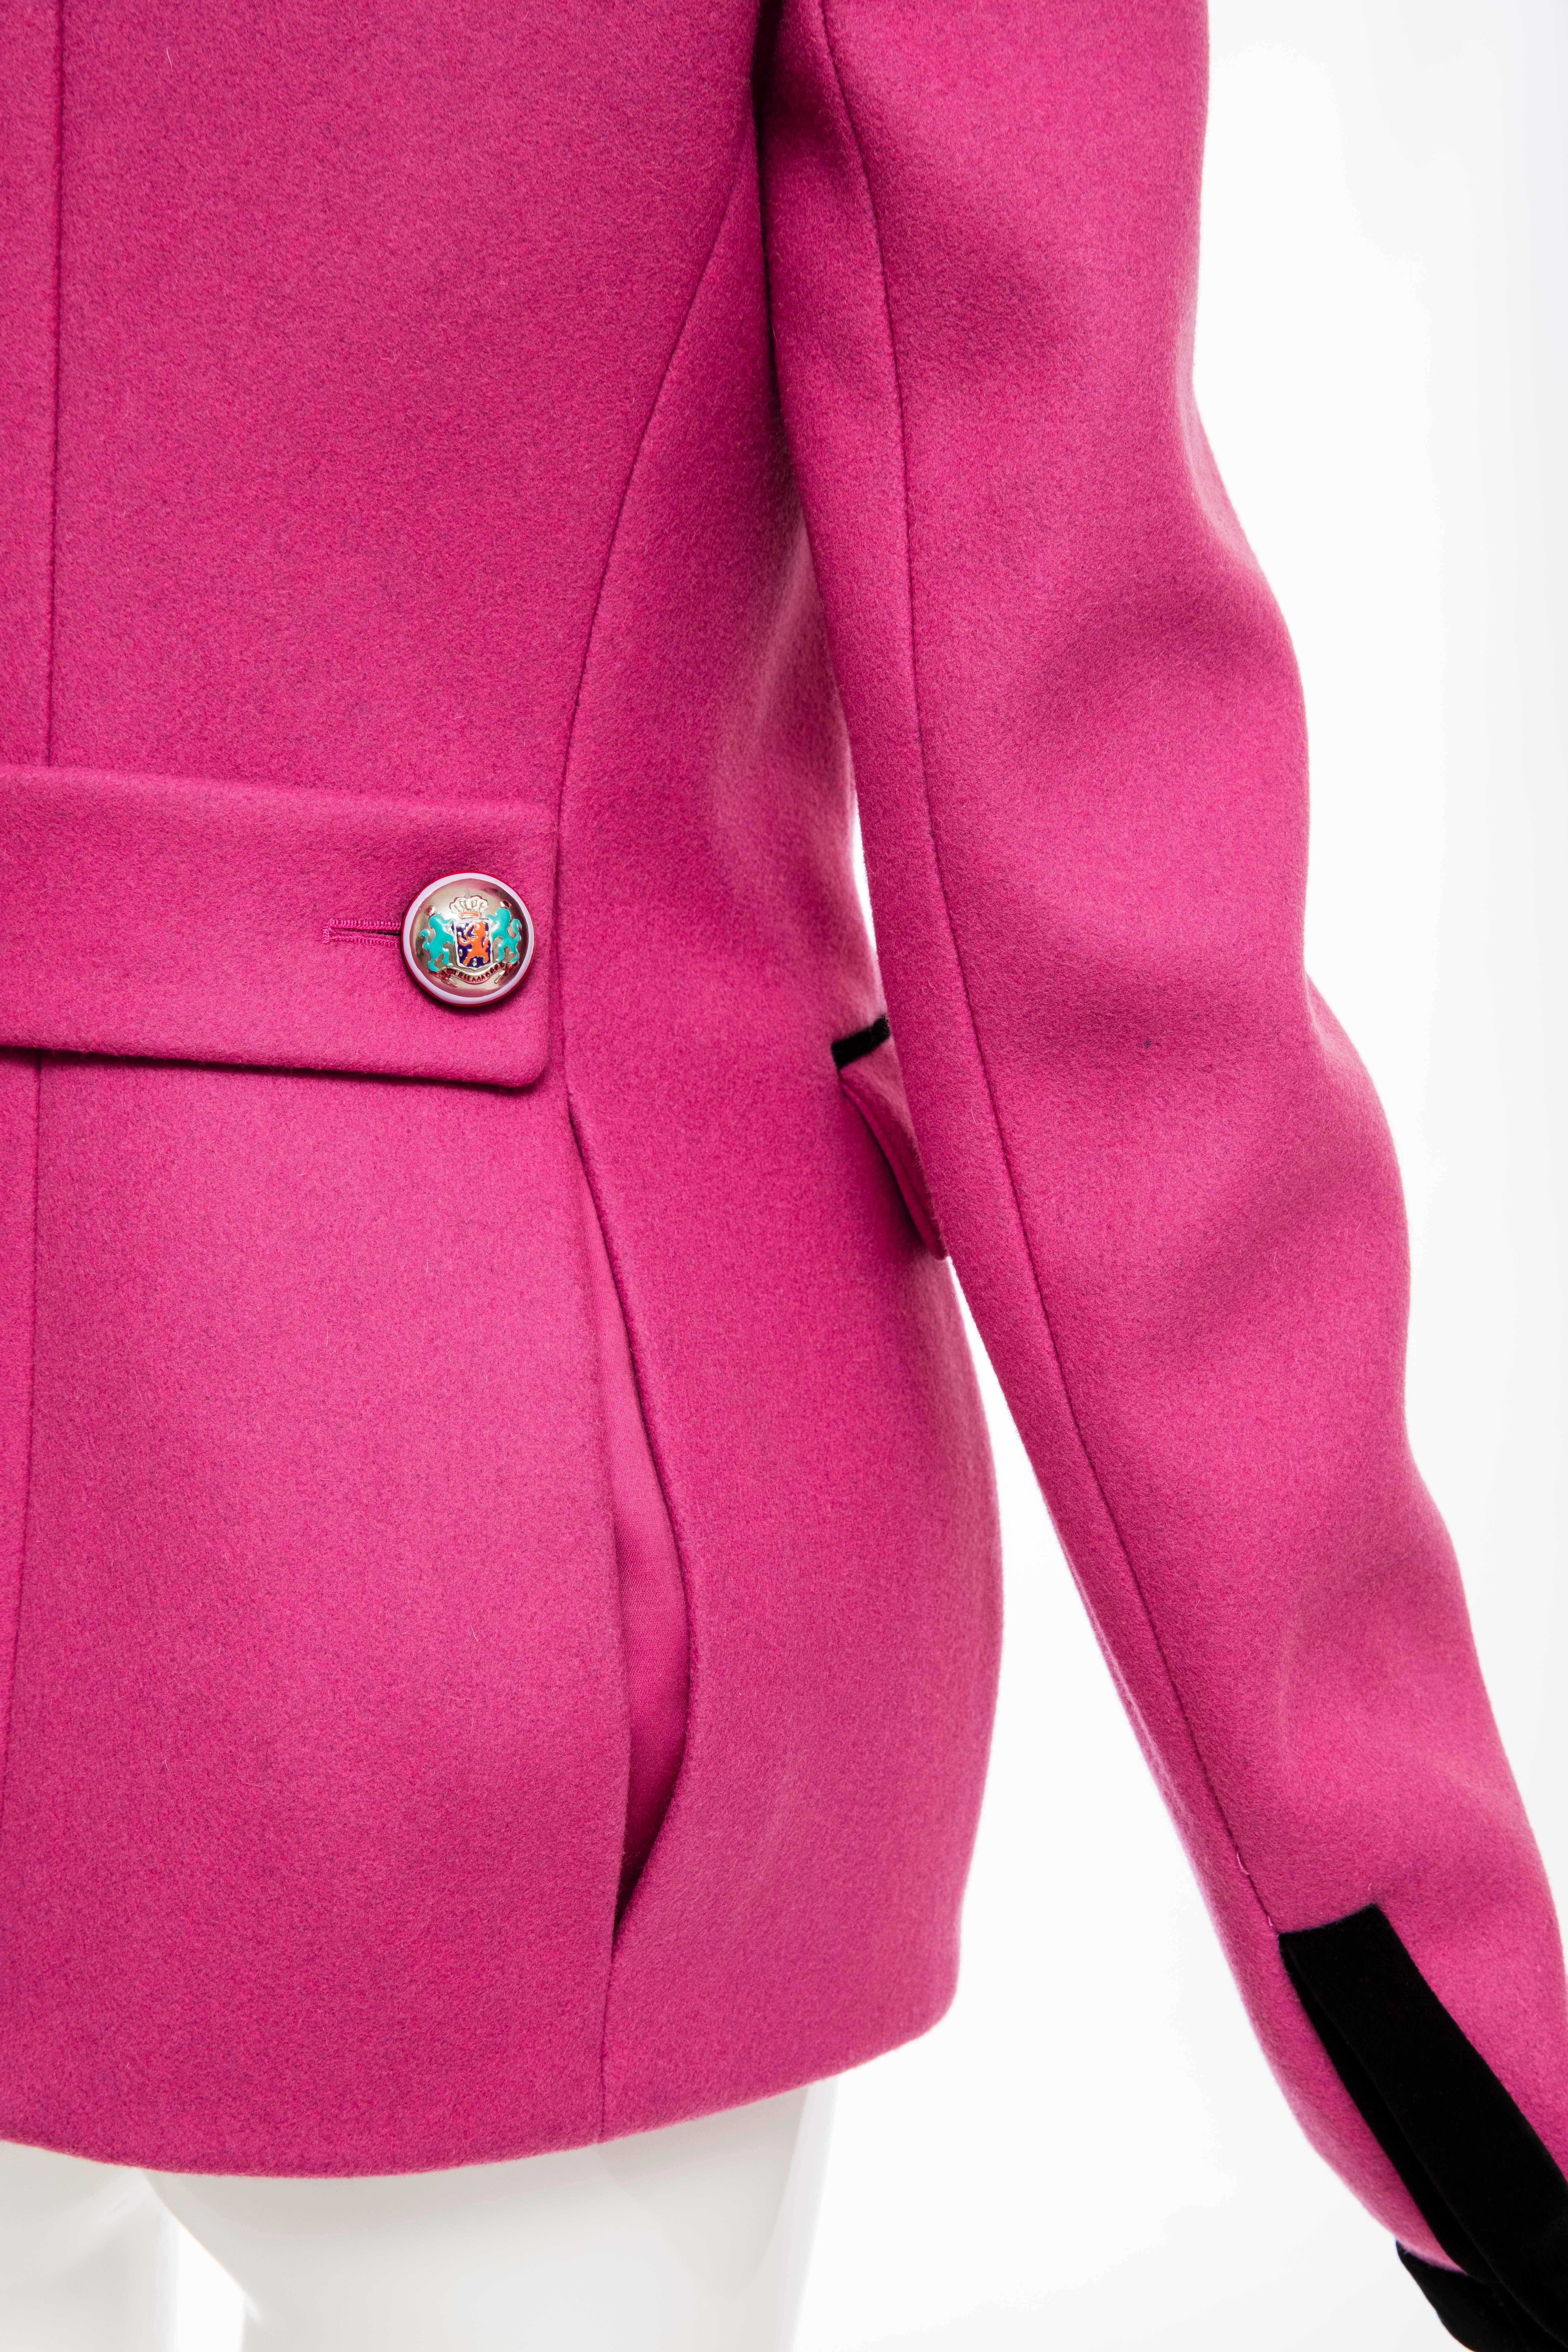  Nicolas Ghesquière for Balenciaga Runway Pink Wool Velvet Blazer, Fall 2007 For Sale 2